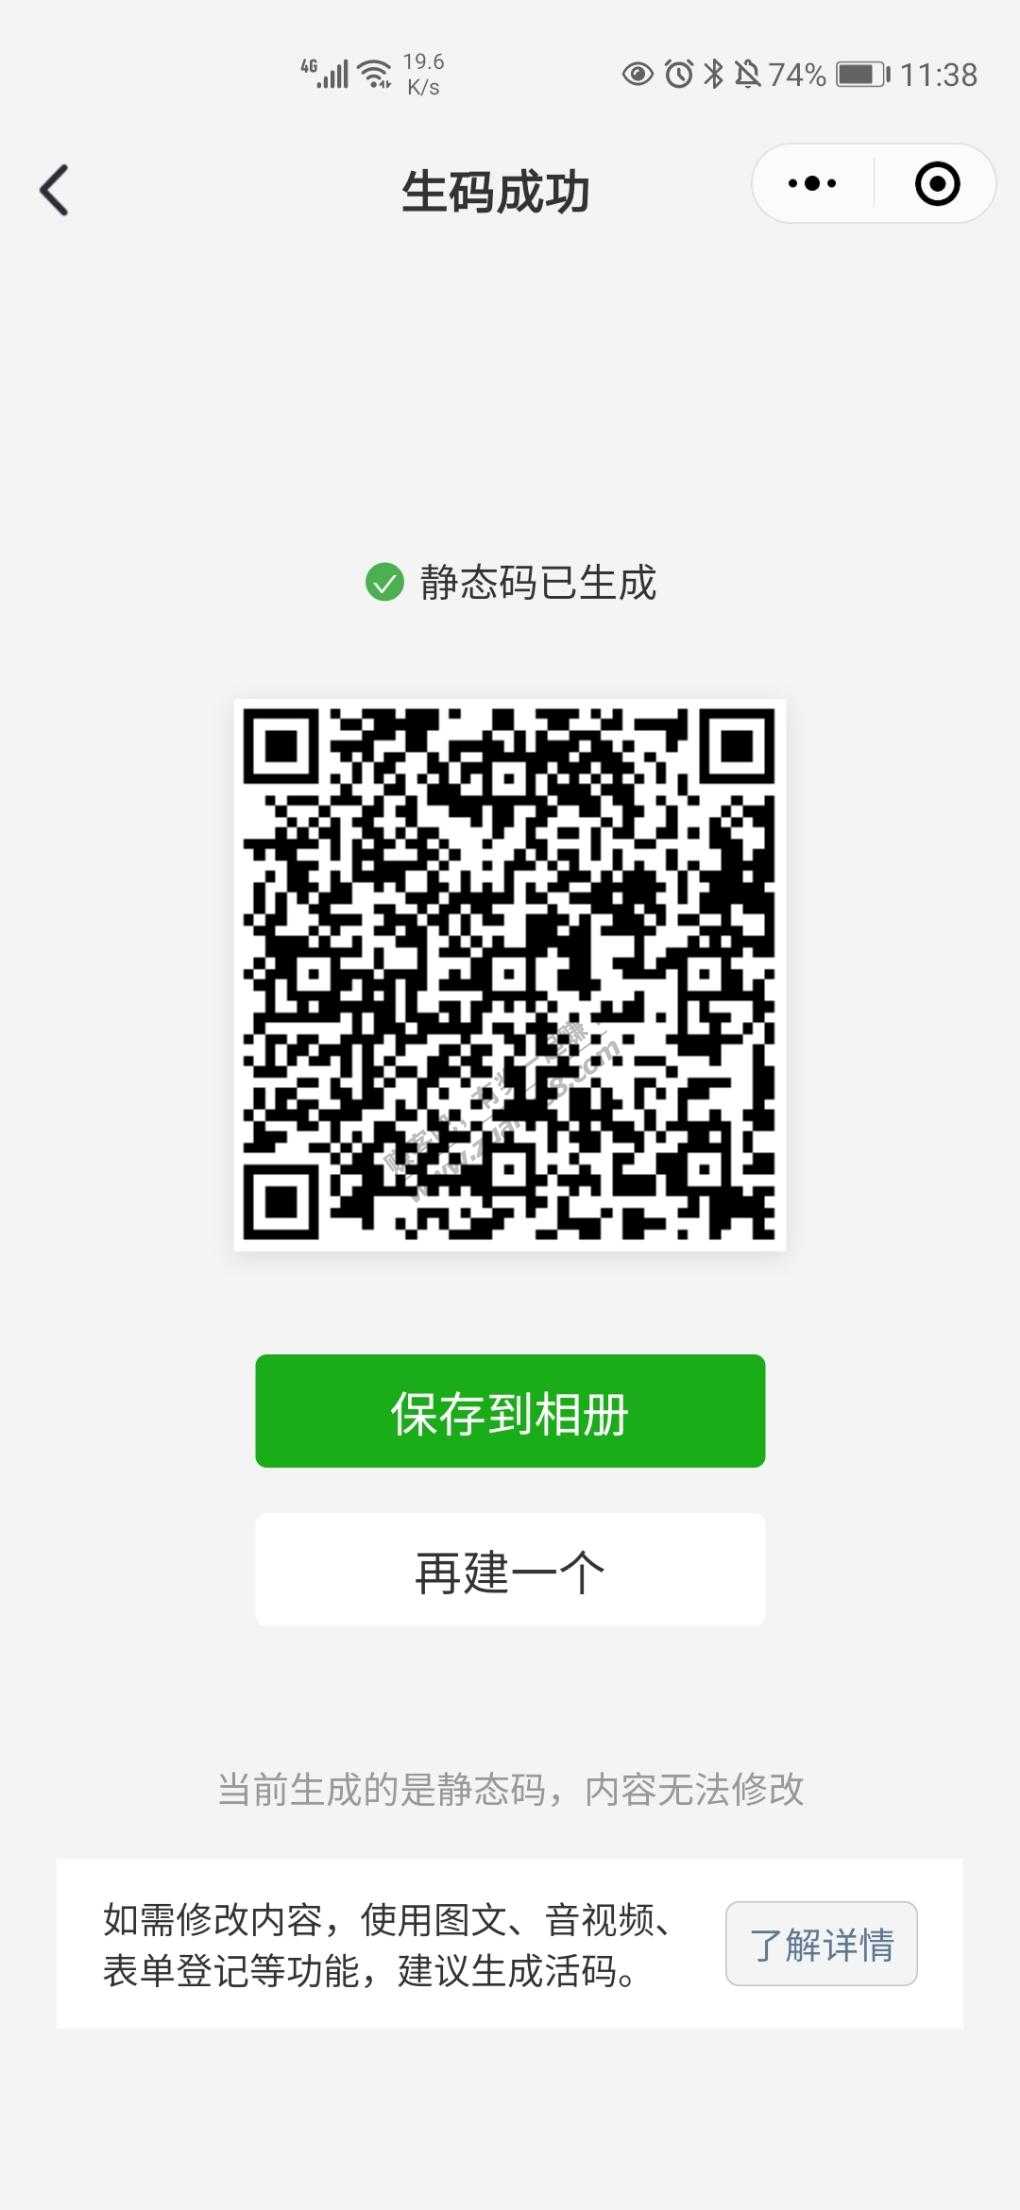 招行1月粉丝福利日-惠小助(52huixz.com)